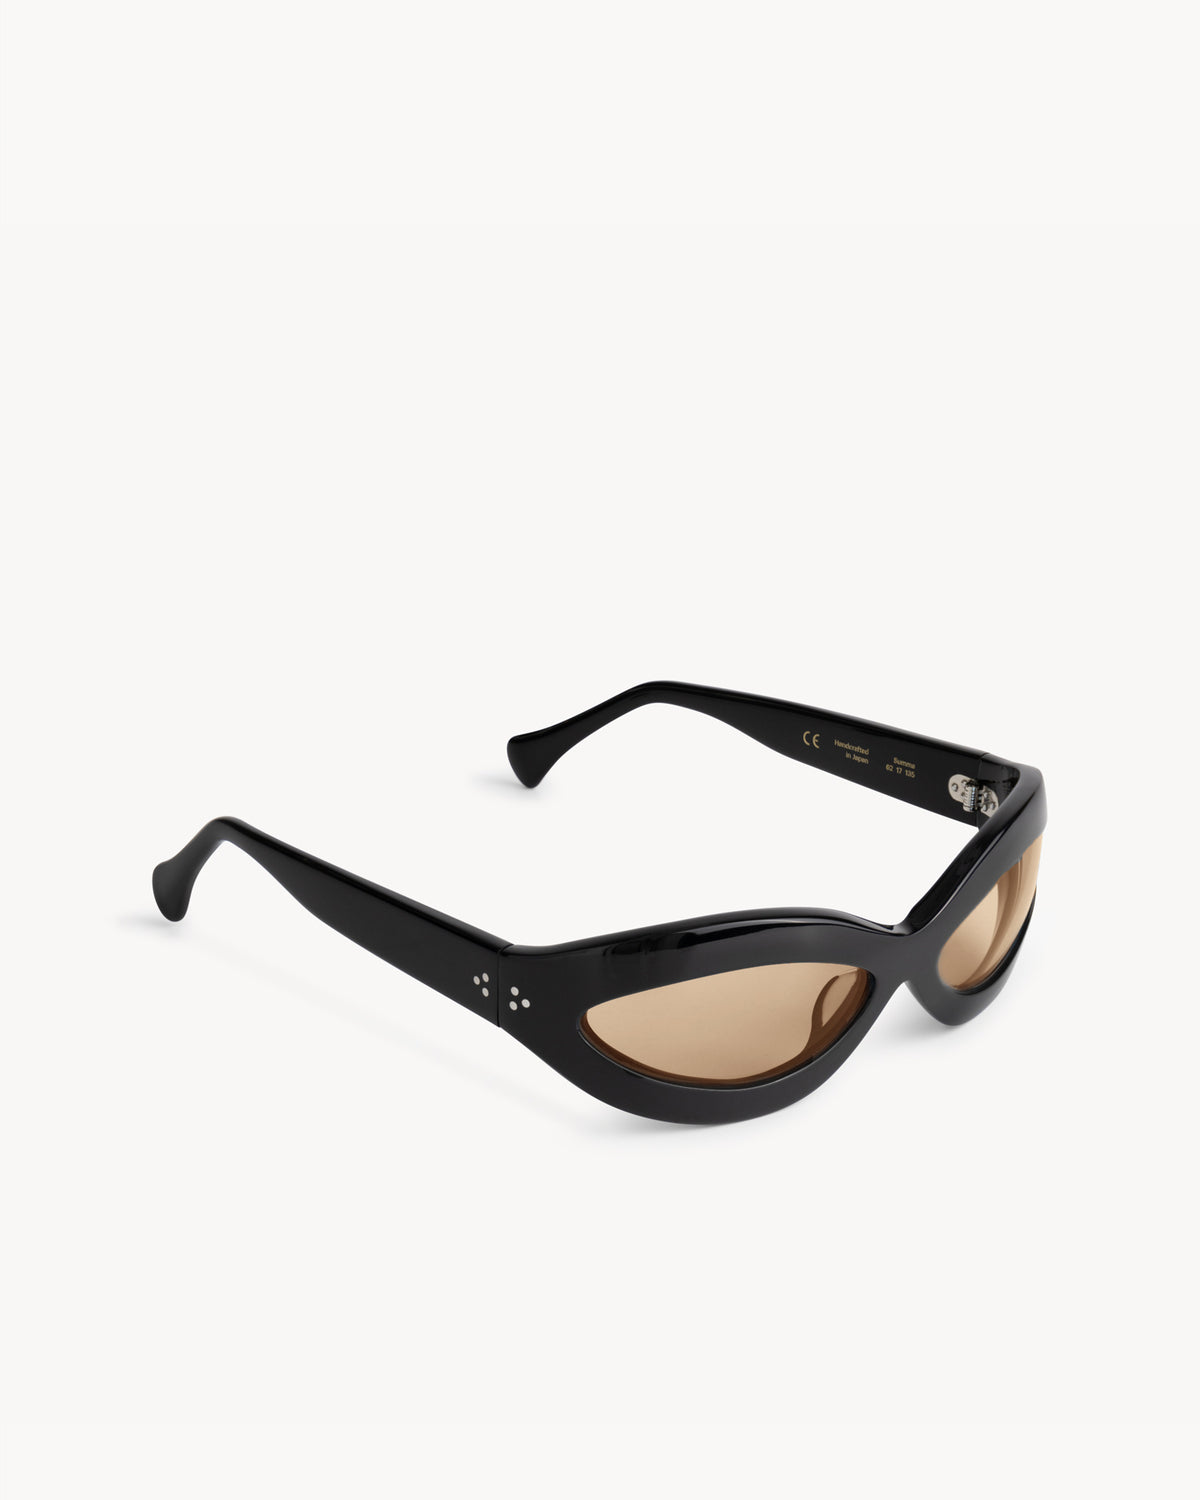 Leila | Black Acetate | Amber Lens | Port Tanger Sunglasses – Port 